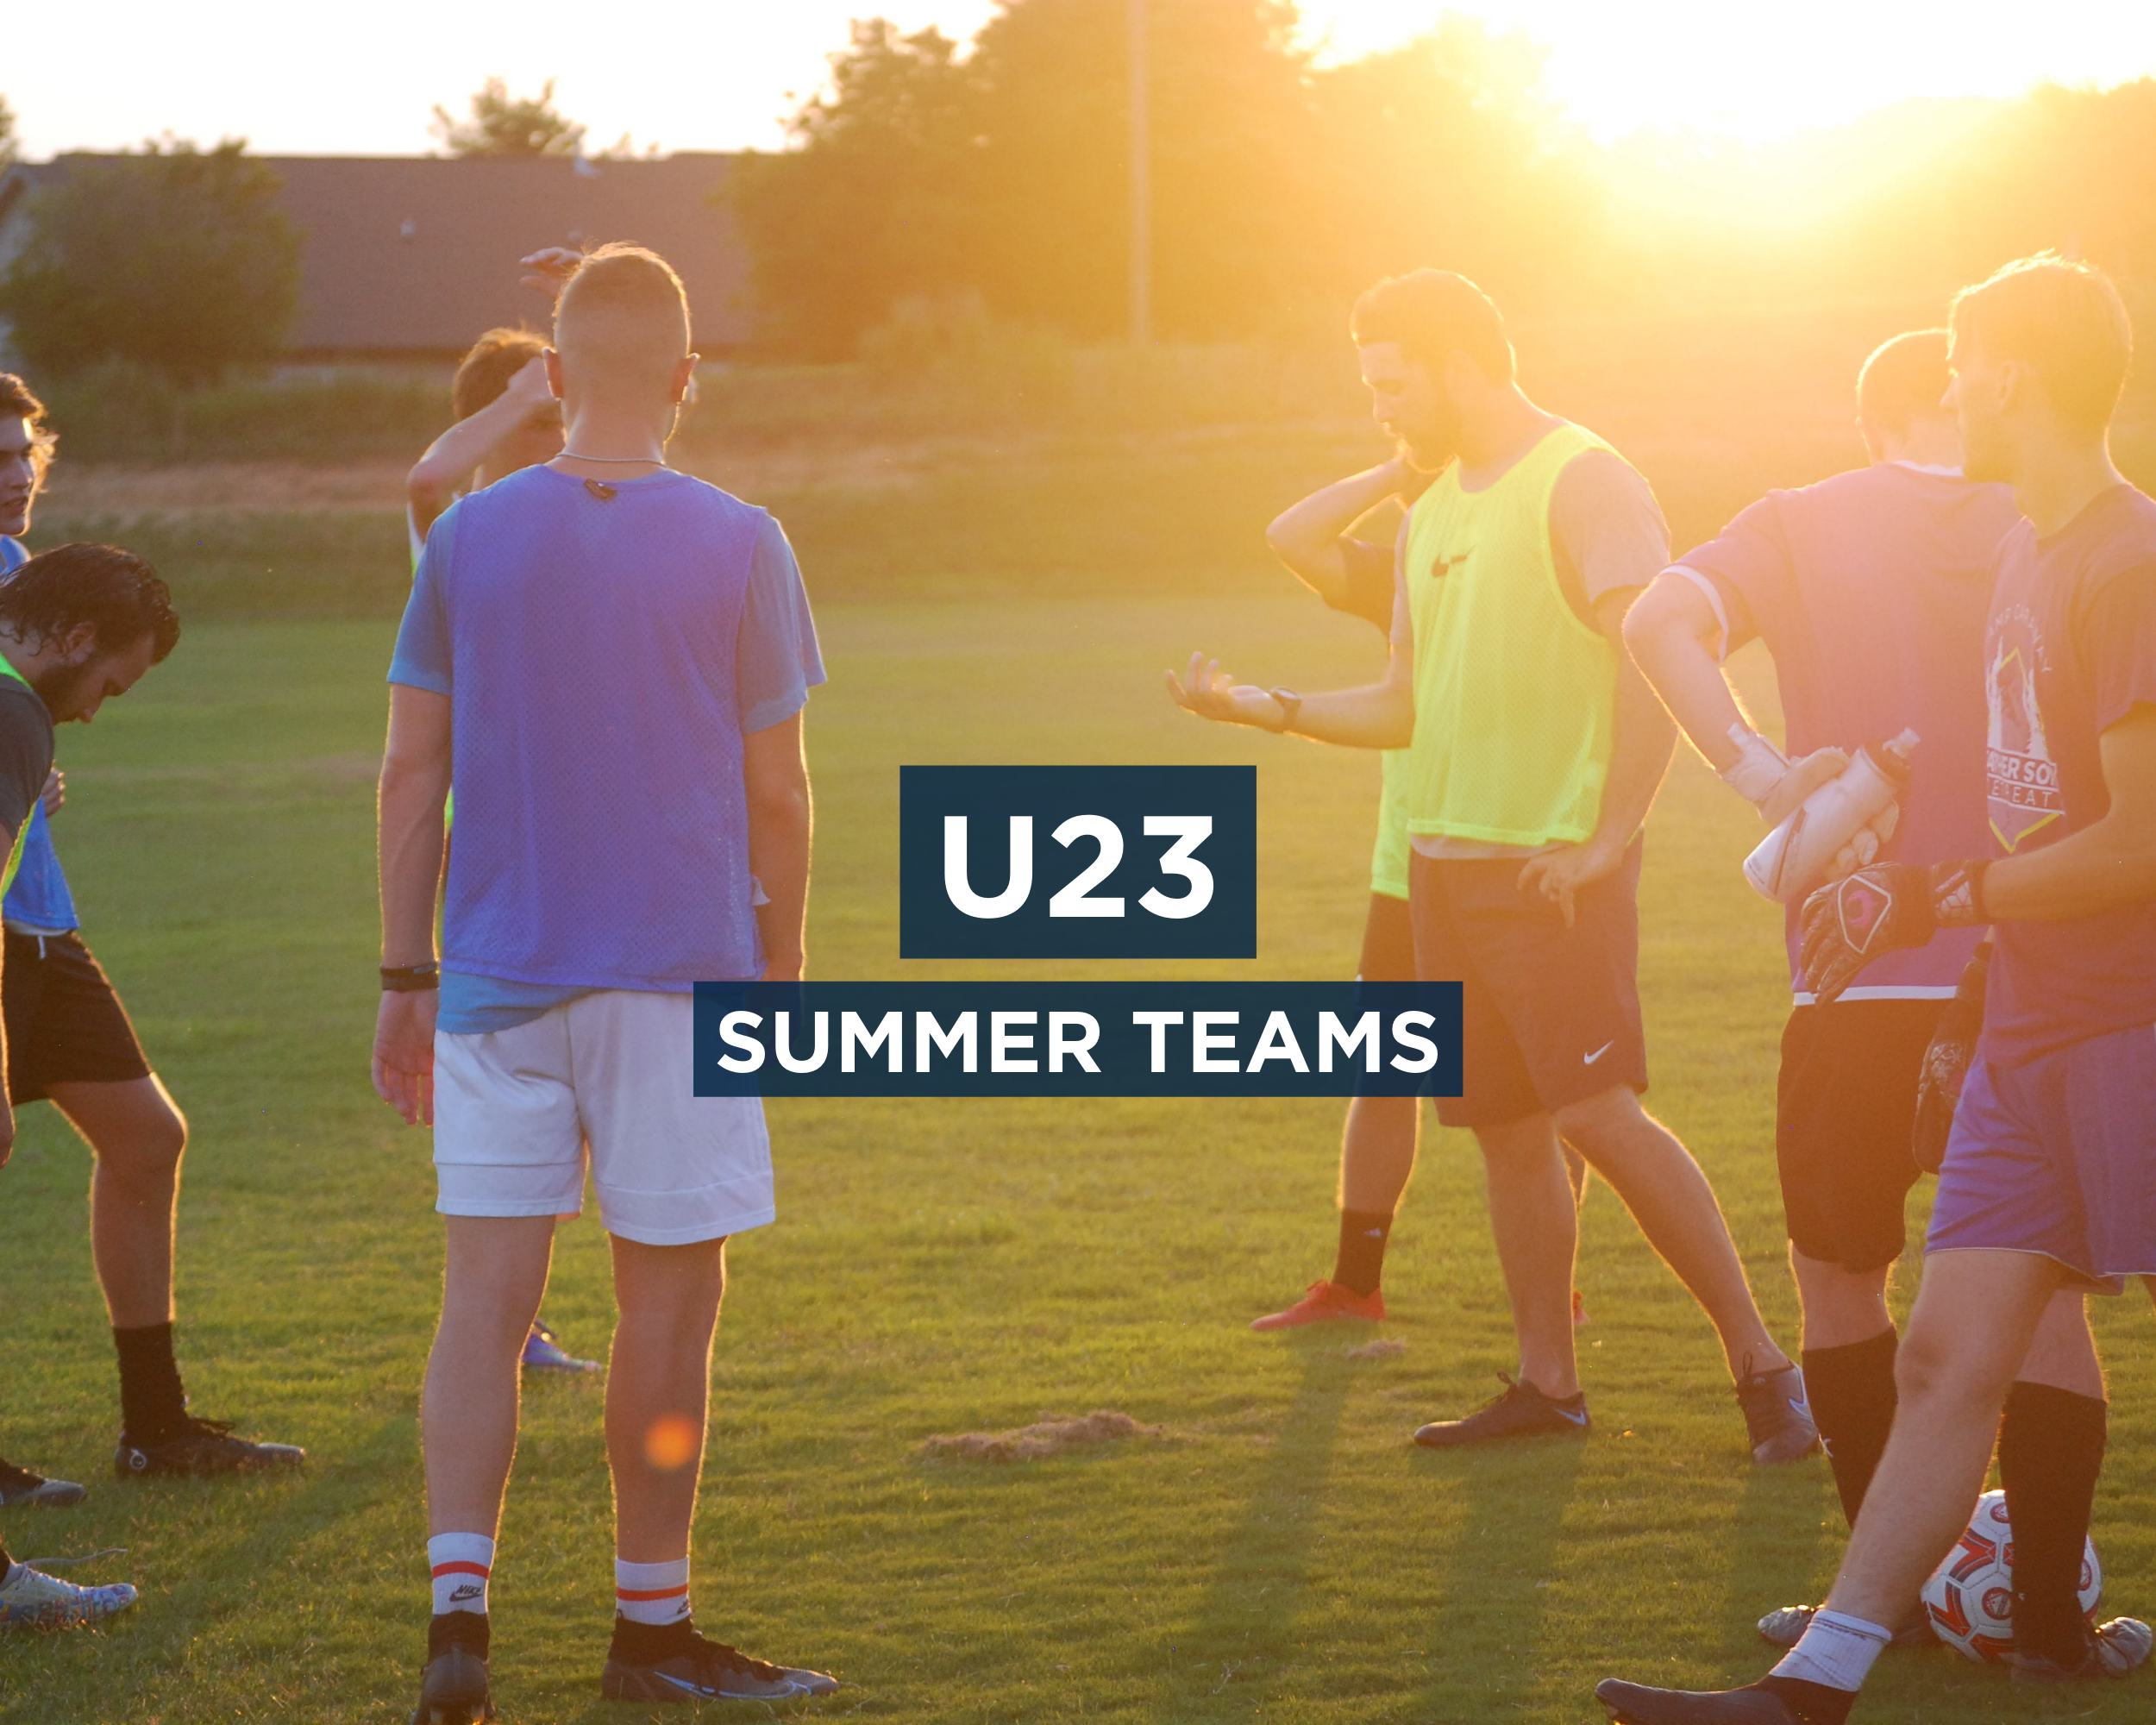 U23 Summer Teams Banner.png